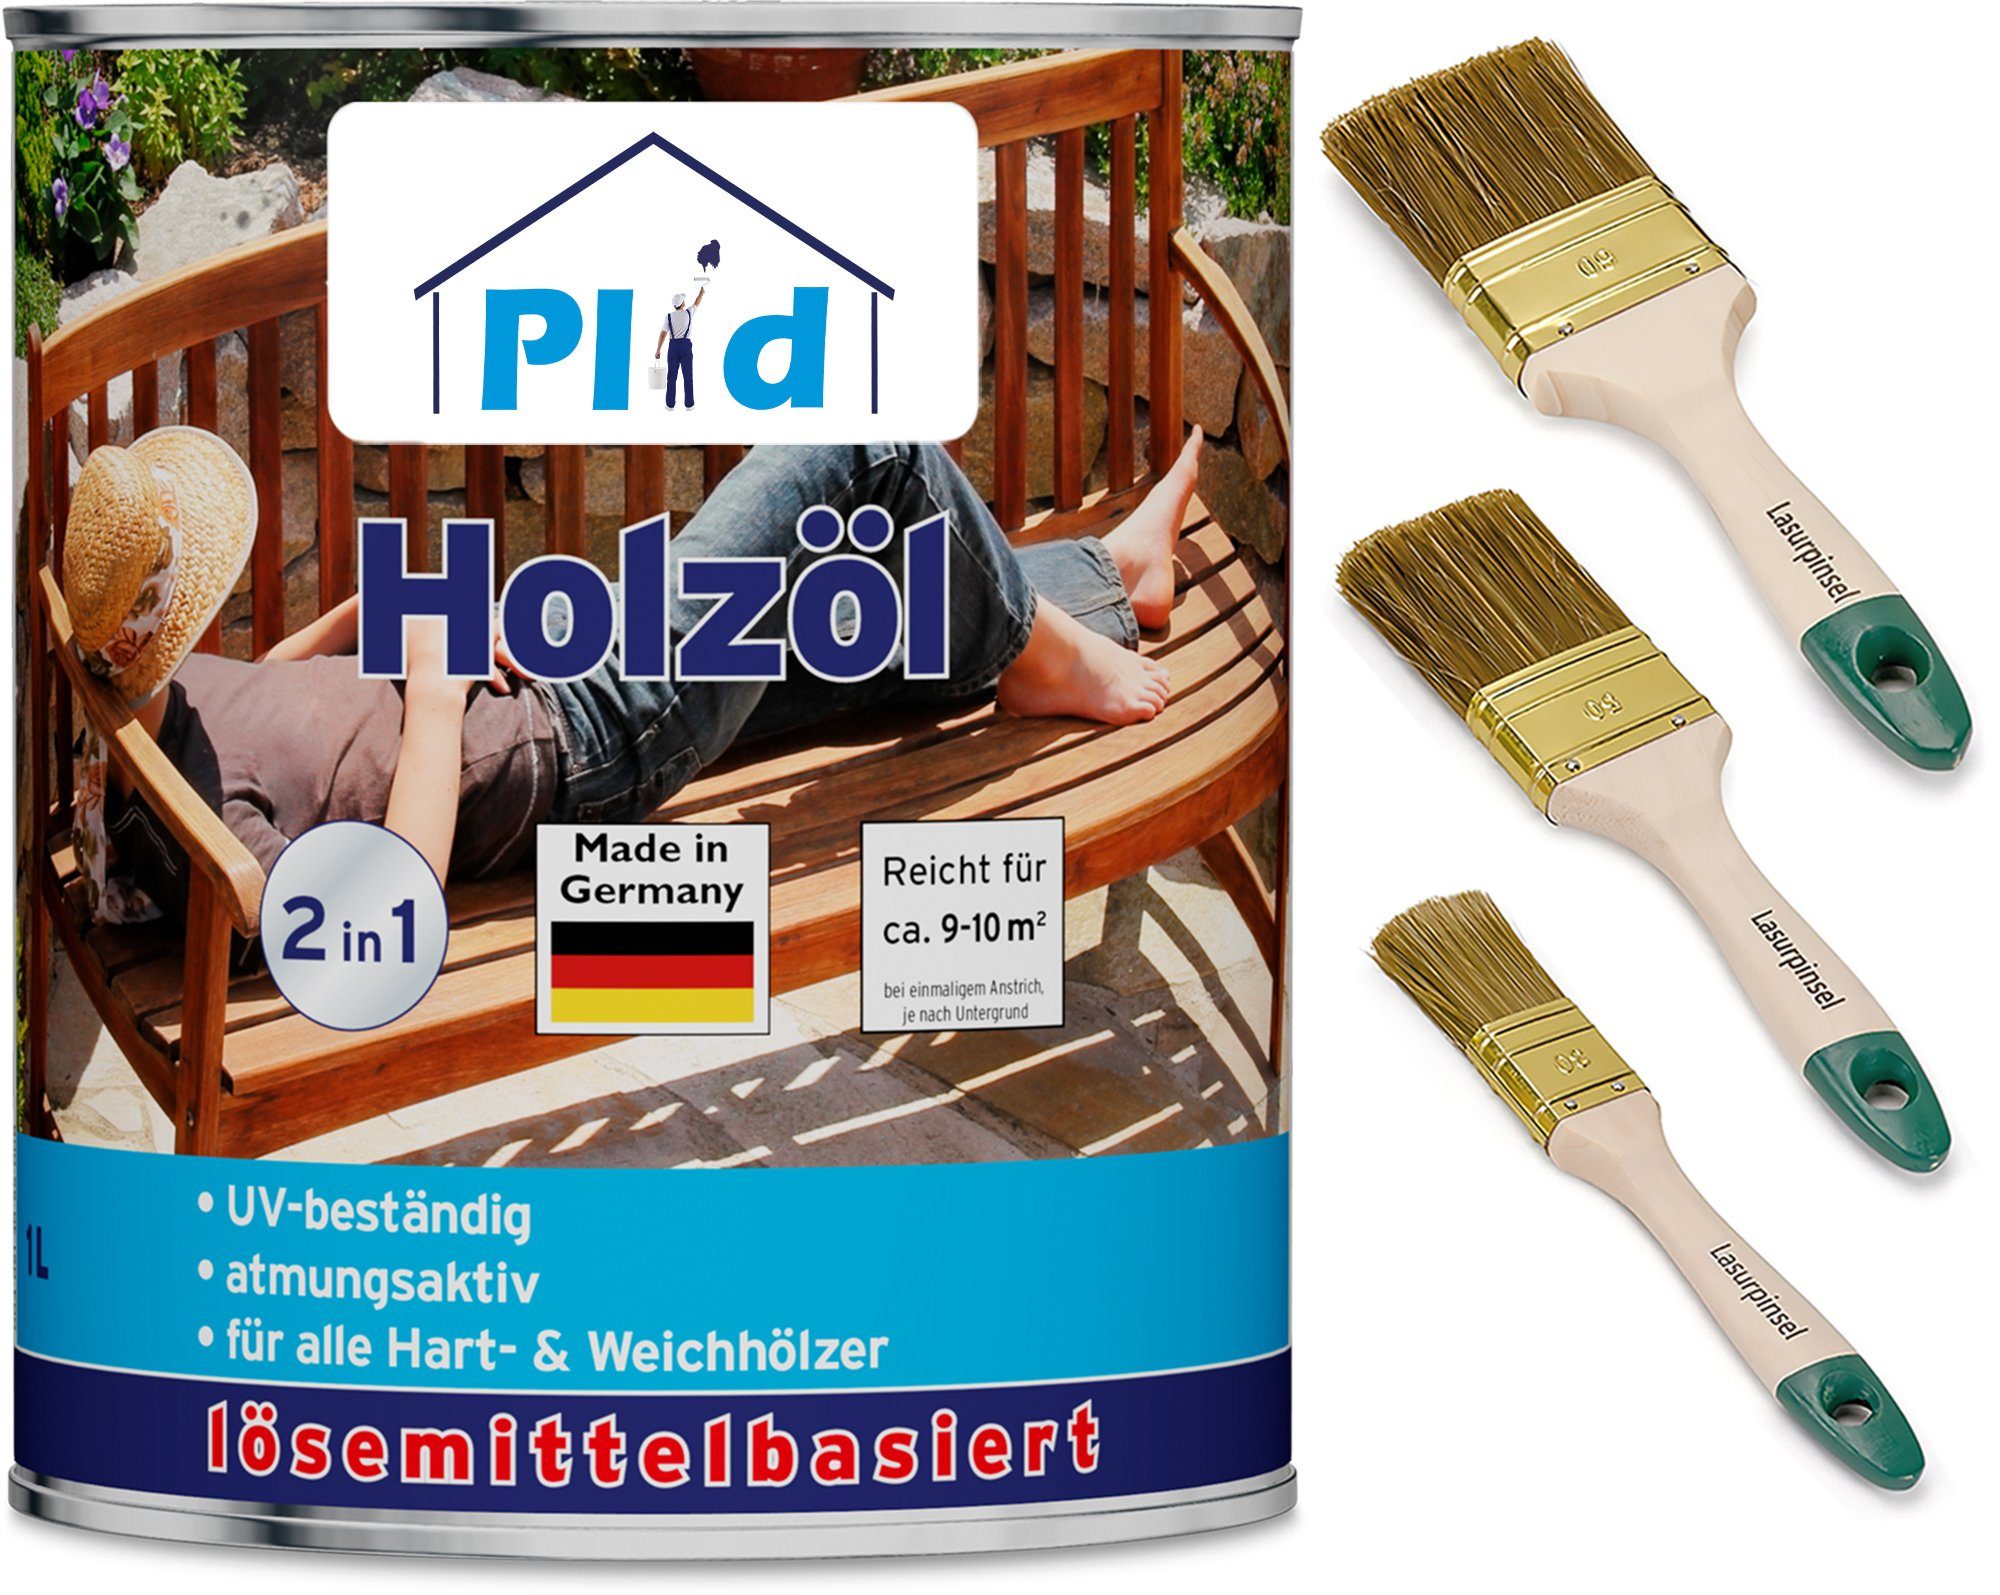 plid Holzöl Premium Holzöl Pflegeöl Holzschutz Imprägnieröl Pinsel Teak